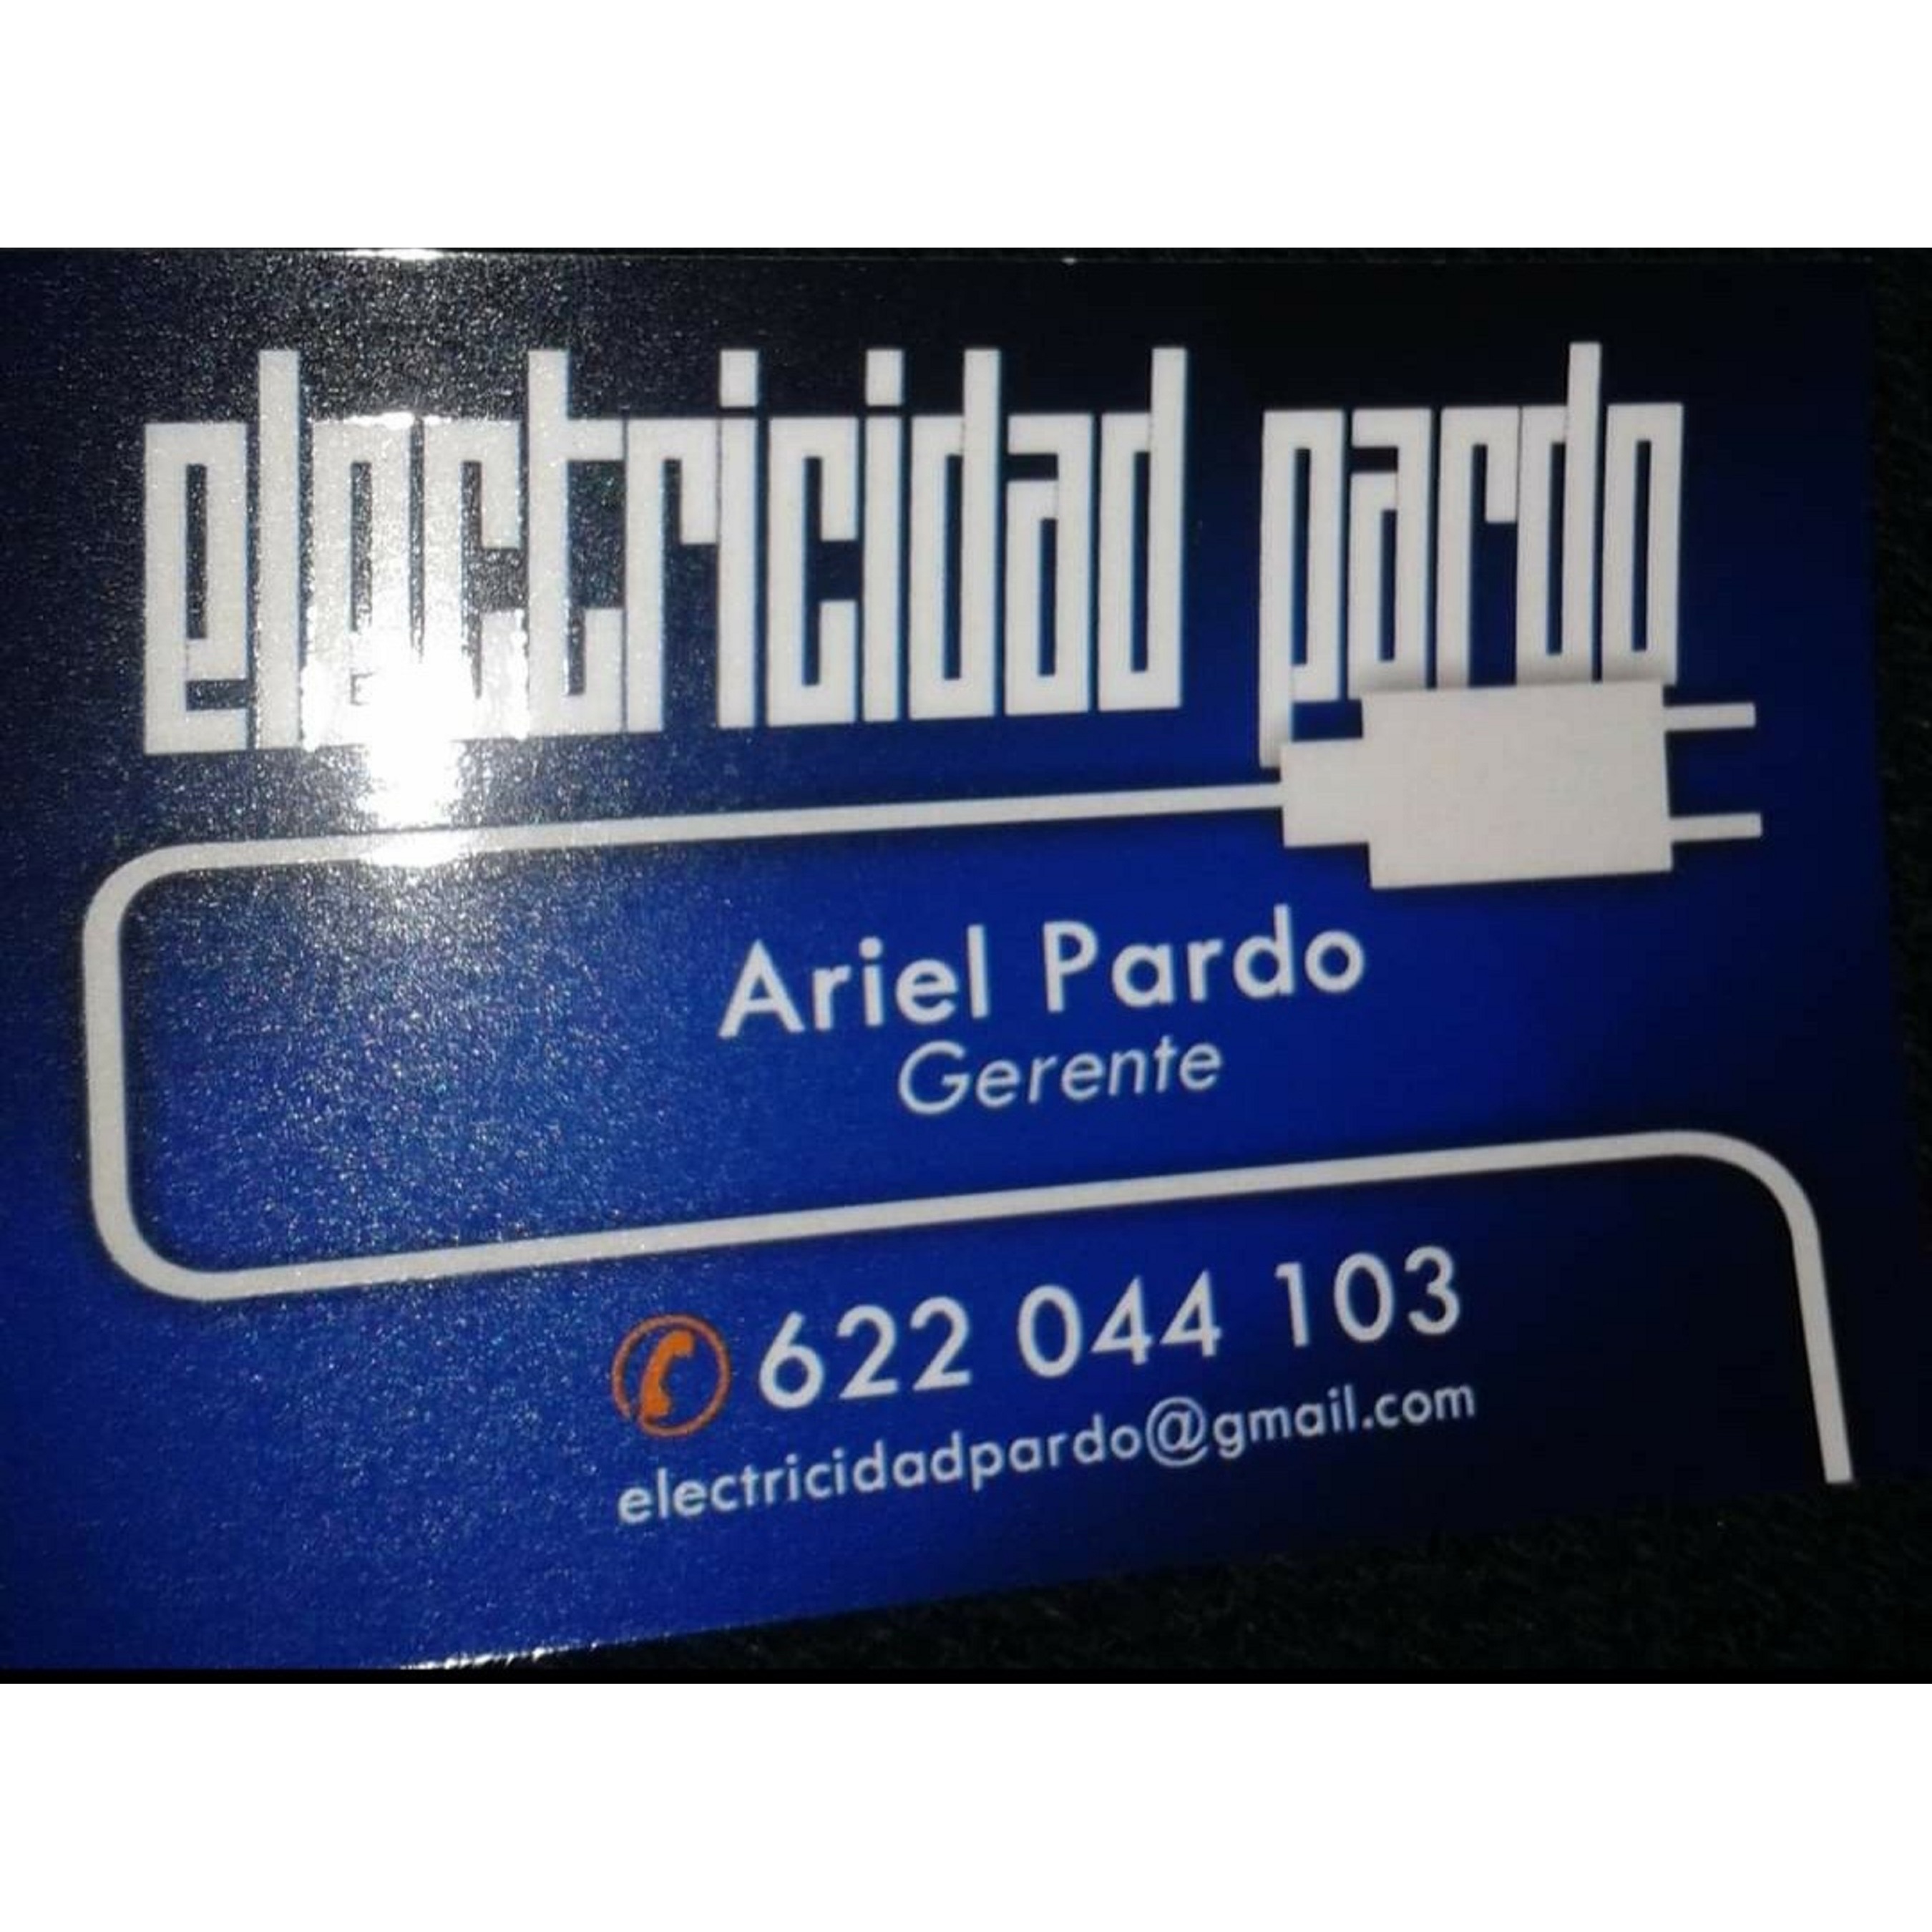 Electricidad Pardo Santa Pola